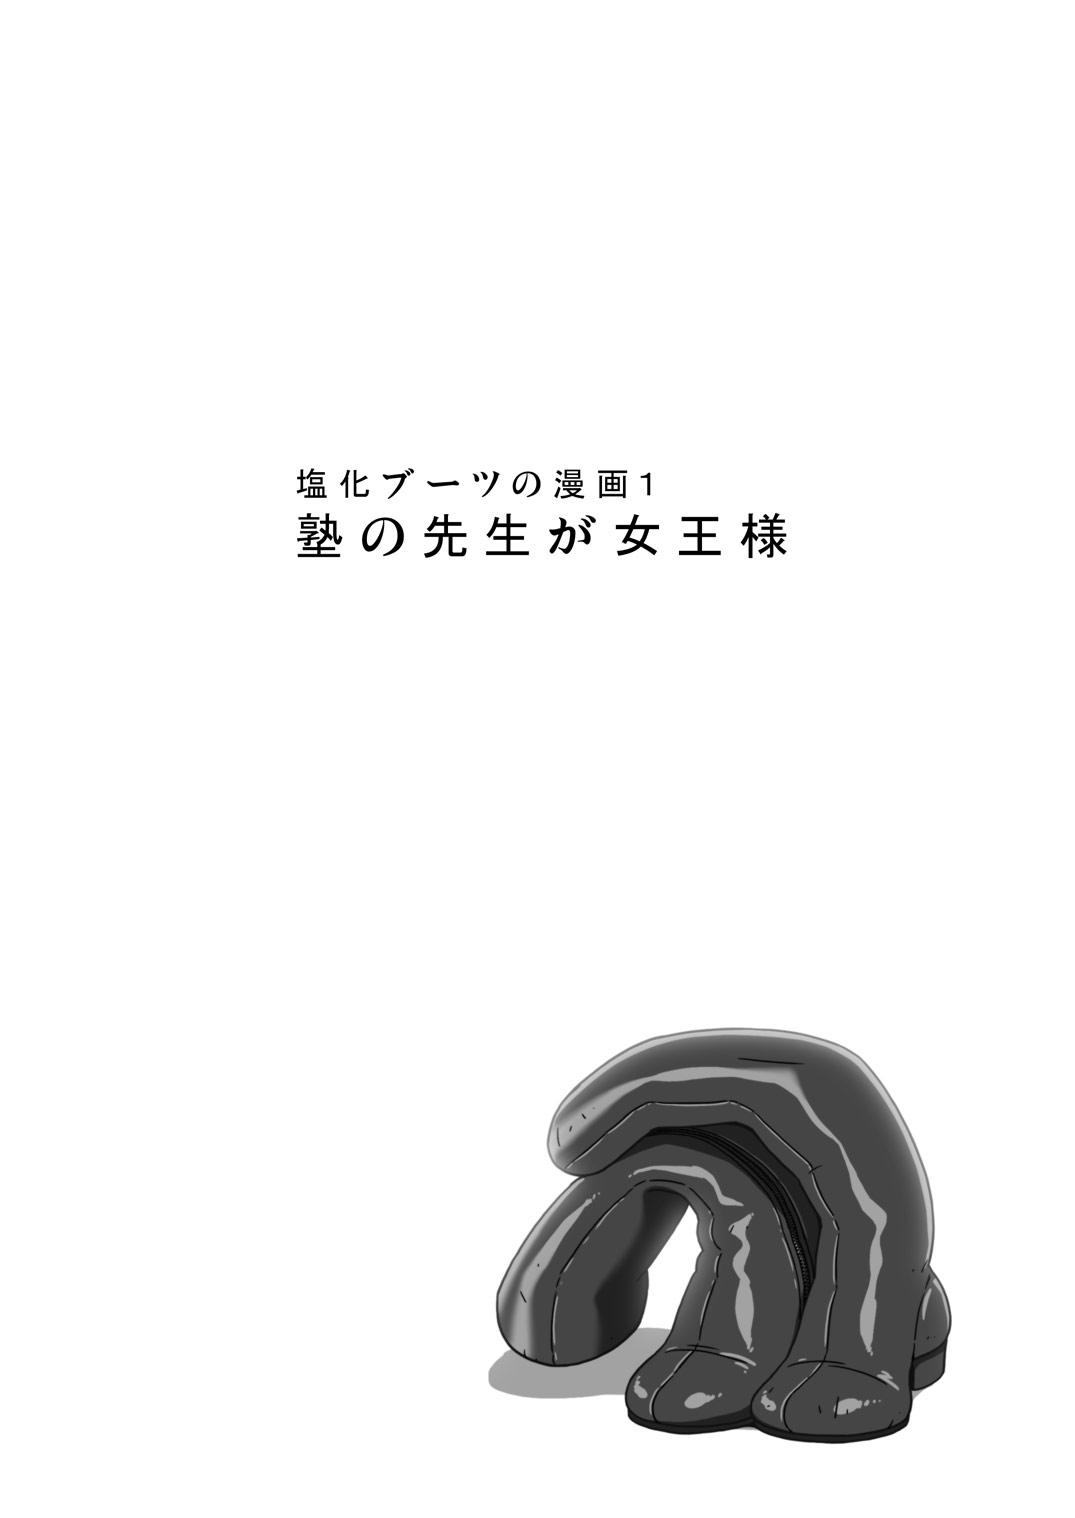 Blowjob [Enka Boots] Enka Boots no Manga 1 - Juku no Sensei ga Joou-sama V2.0 Bisexual - Page 4